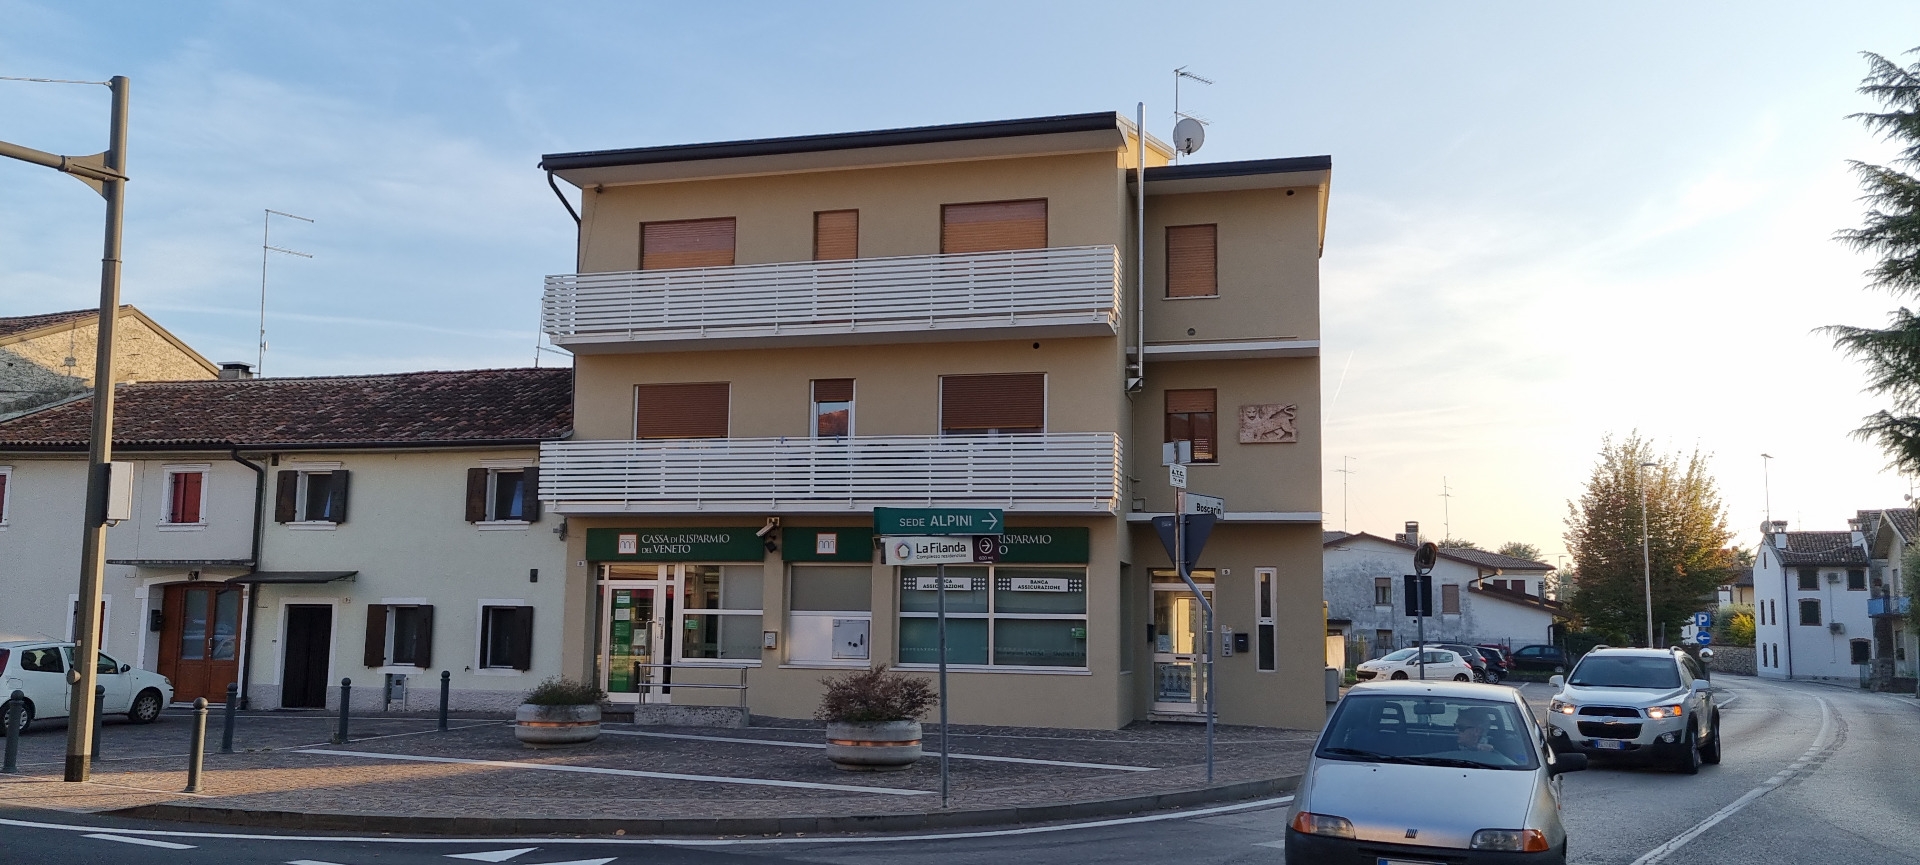 Appartamento in vendita a Orsago, 5 locali, prezzo € 85.000 | PortaleAgenzieImmobiliari.it